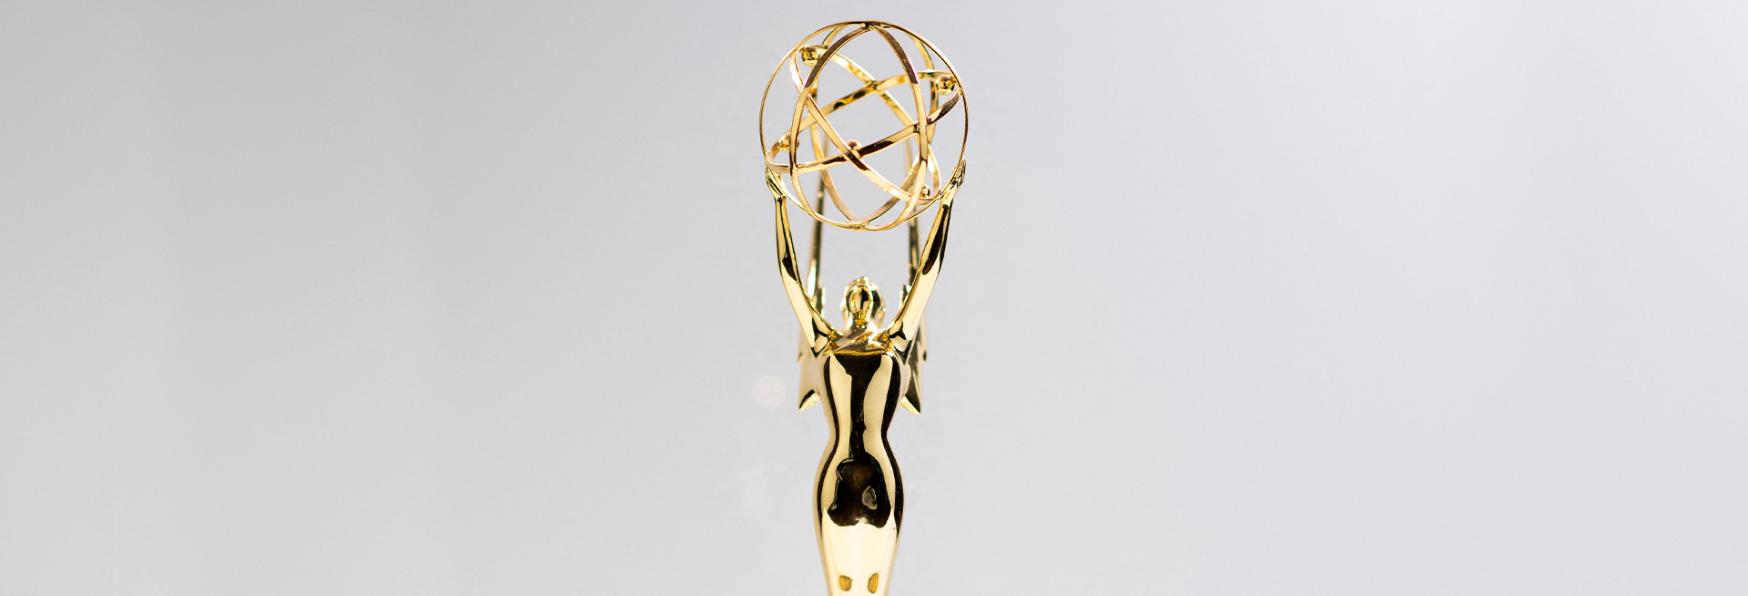 Emmy Awards 2022: è l'anno di HBO. Più Premi di Netflix, Prime Video, Apple e Hulu messi insieme!